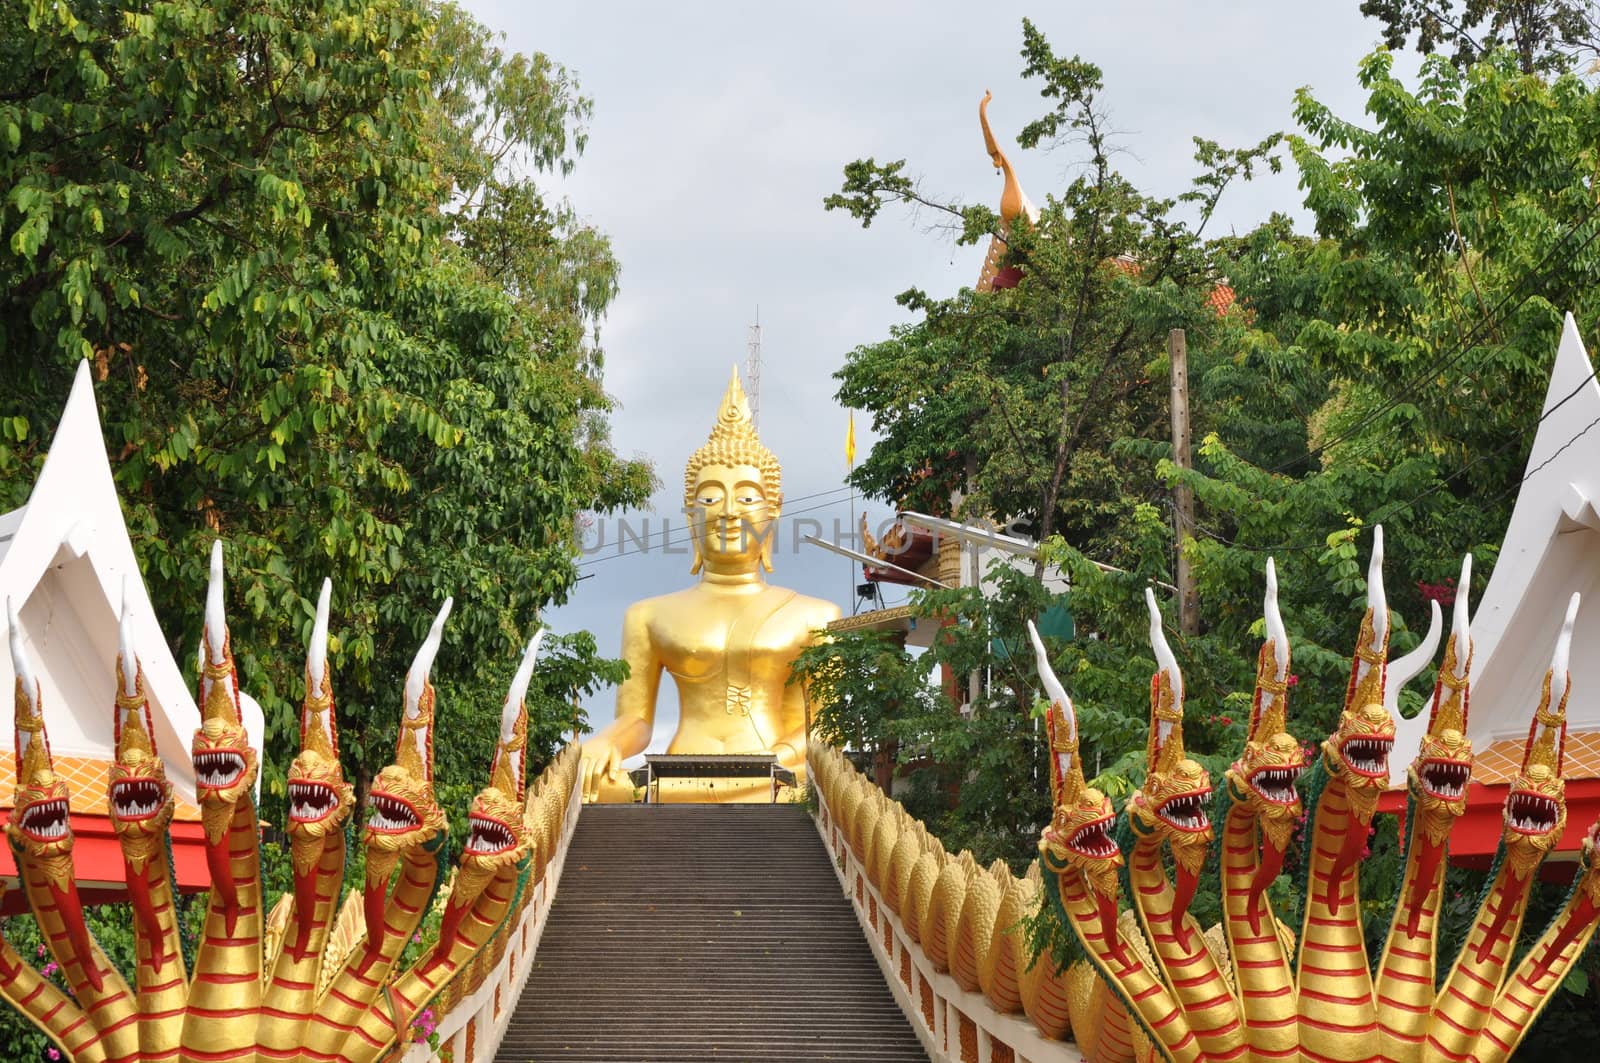 Big Buddha in Pattaya, Thailand by sainaniritu